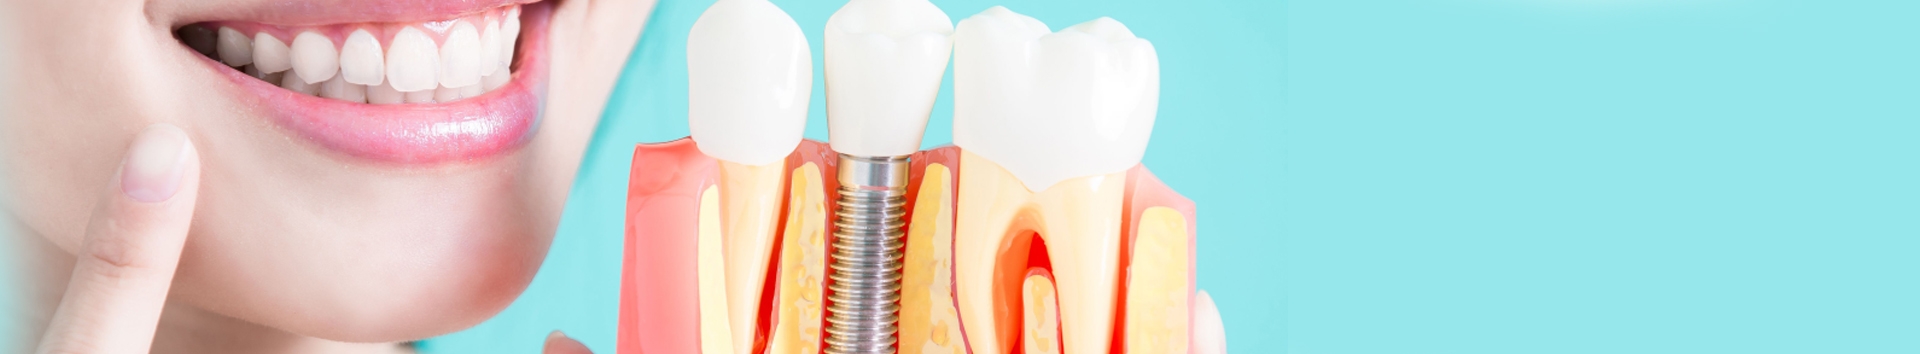 Enxerto ósseo para implante dentário: O que é, tipos e função